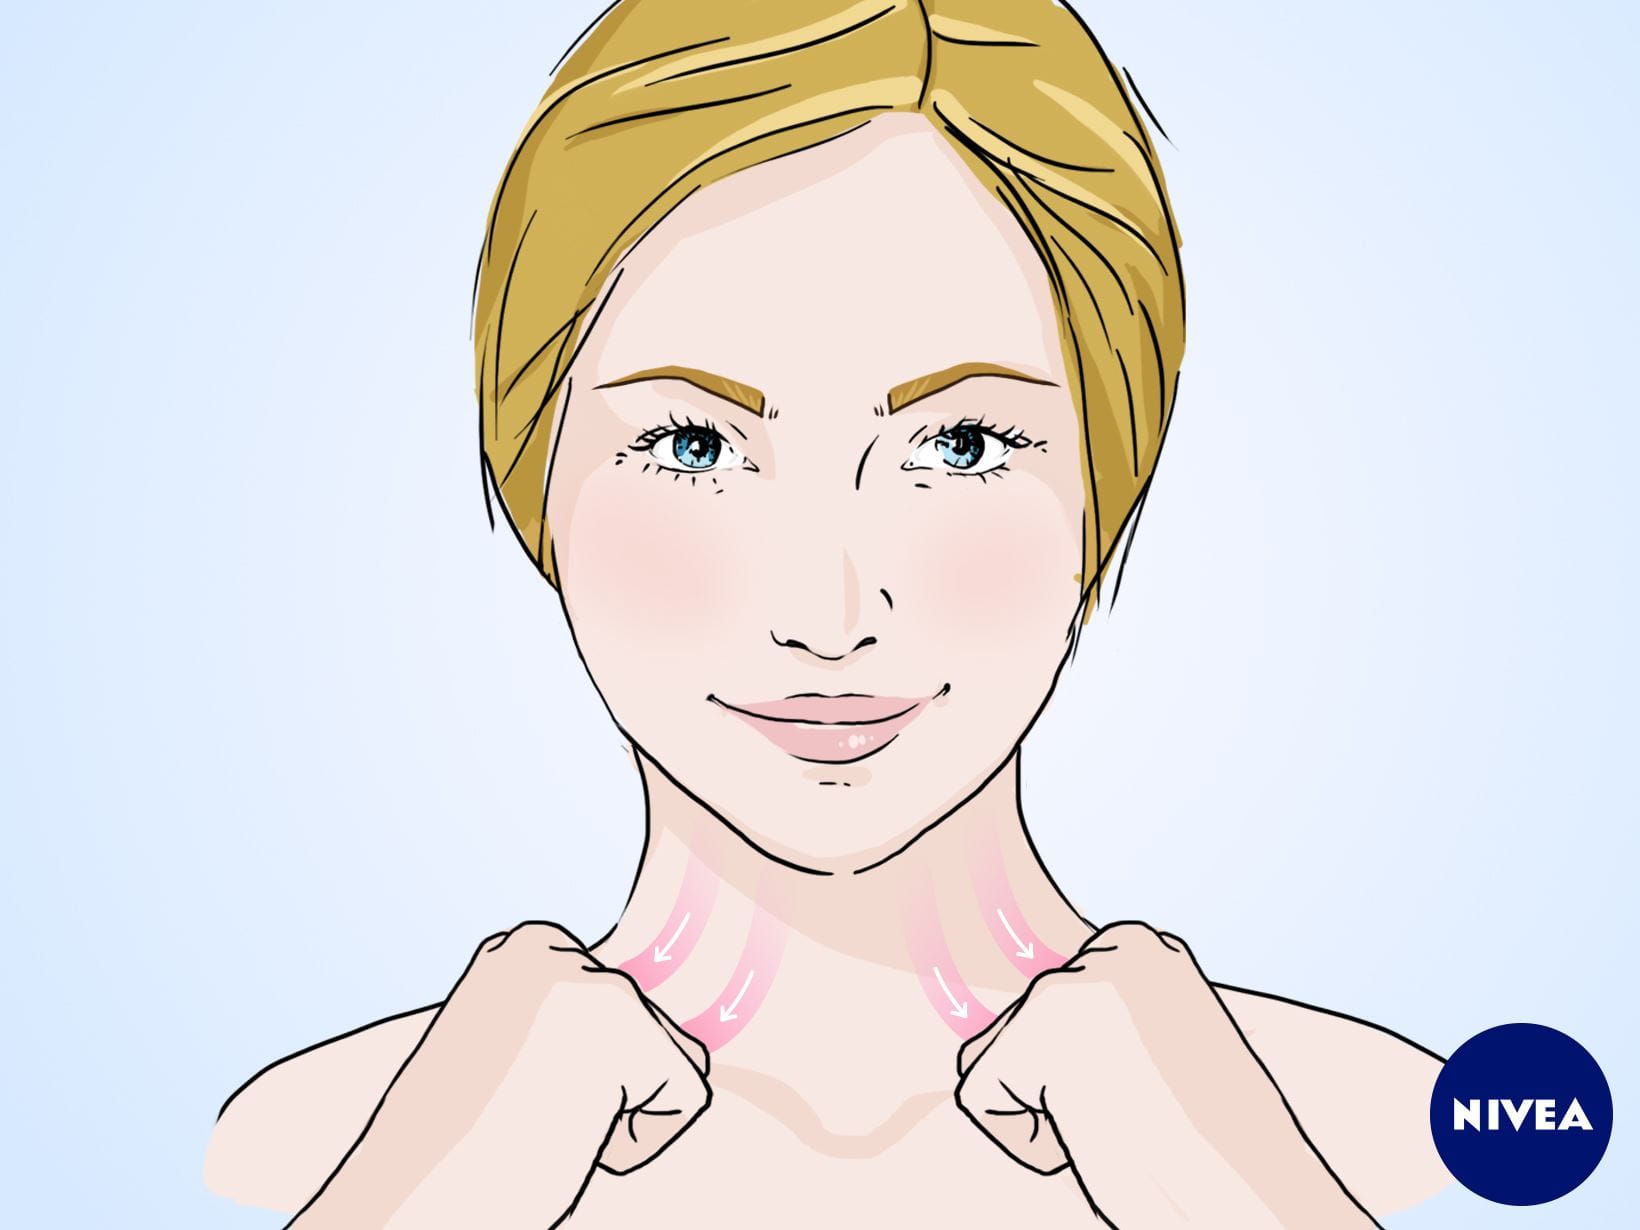 NIVEA Gesichtsmassage-Anleitung: Massagegriff für einen entspannten Hals